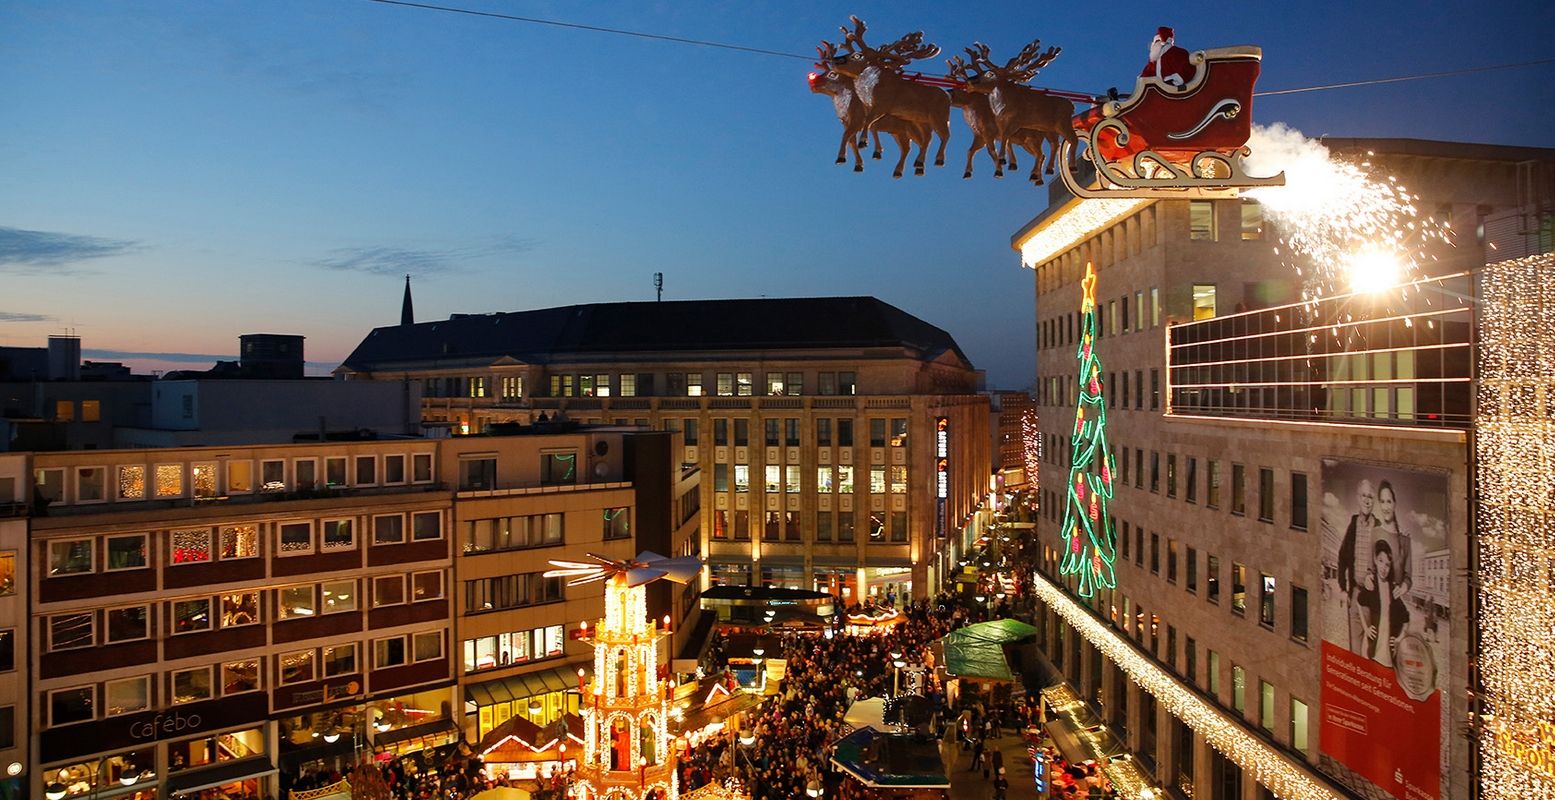 De vliegende kerstman van Bochum. Nee, dat is geen pop! In de slee zit evenwichtskunstenaar Falko Traber. Foto: Michael Grossler